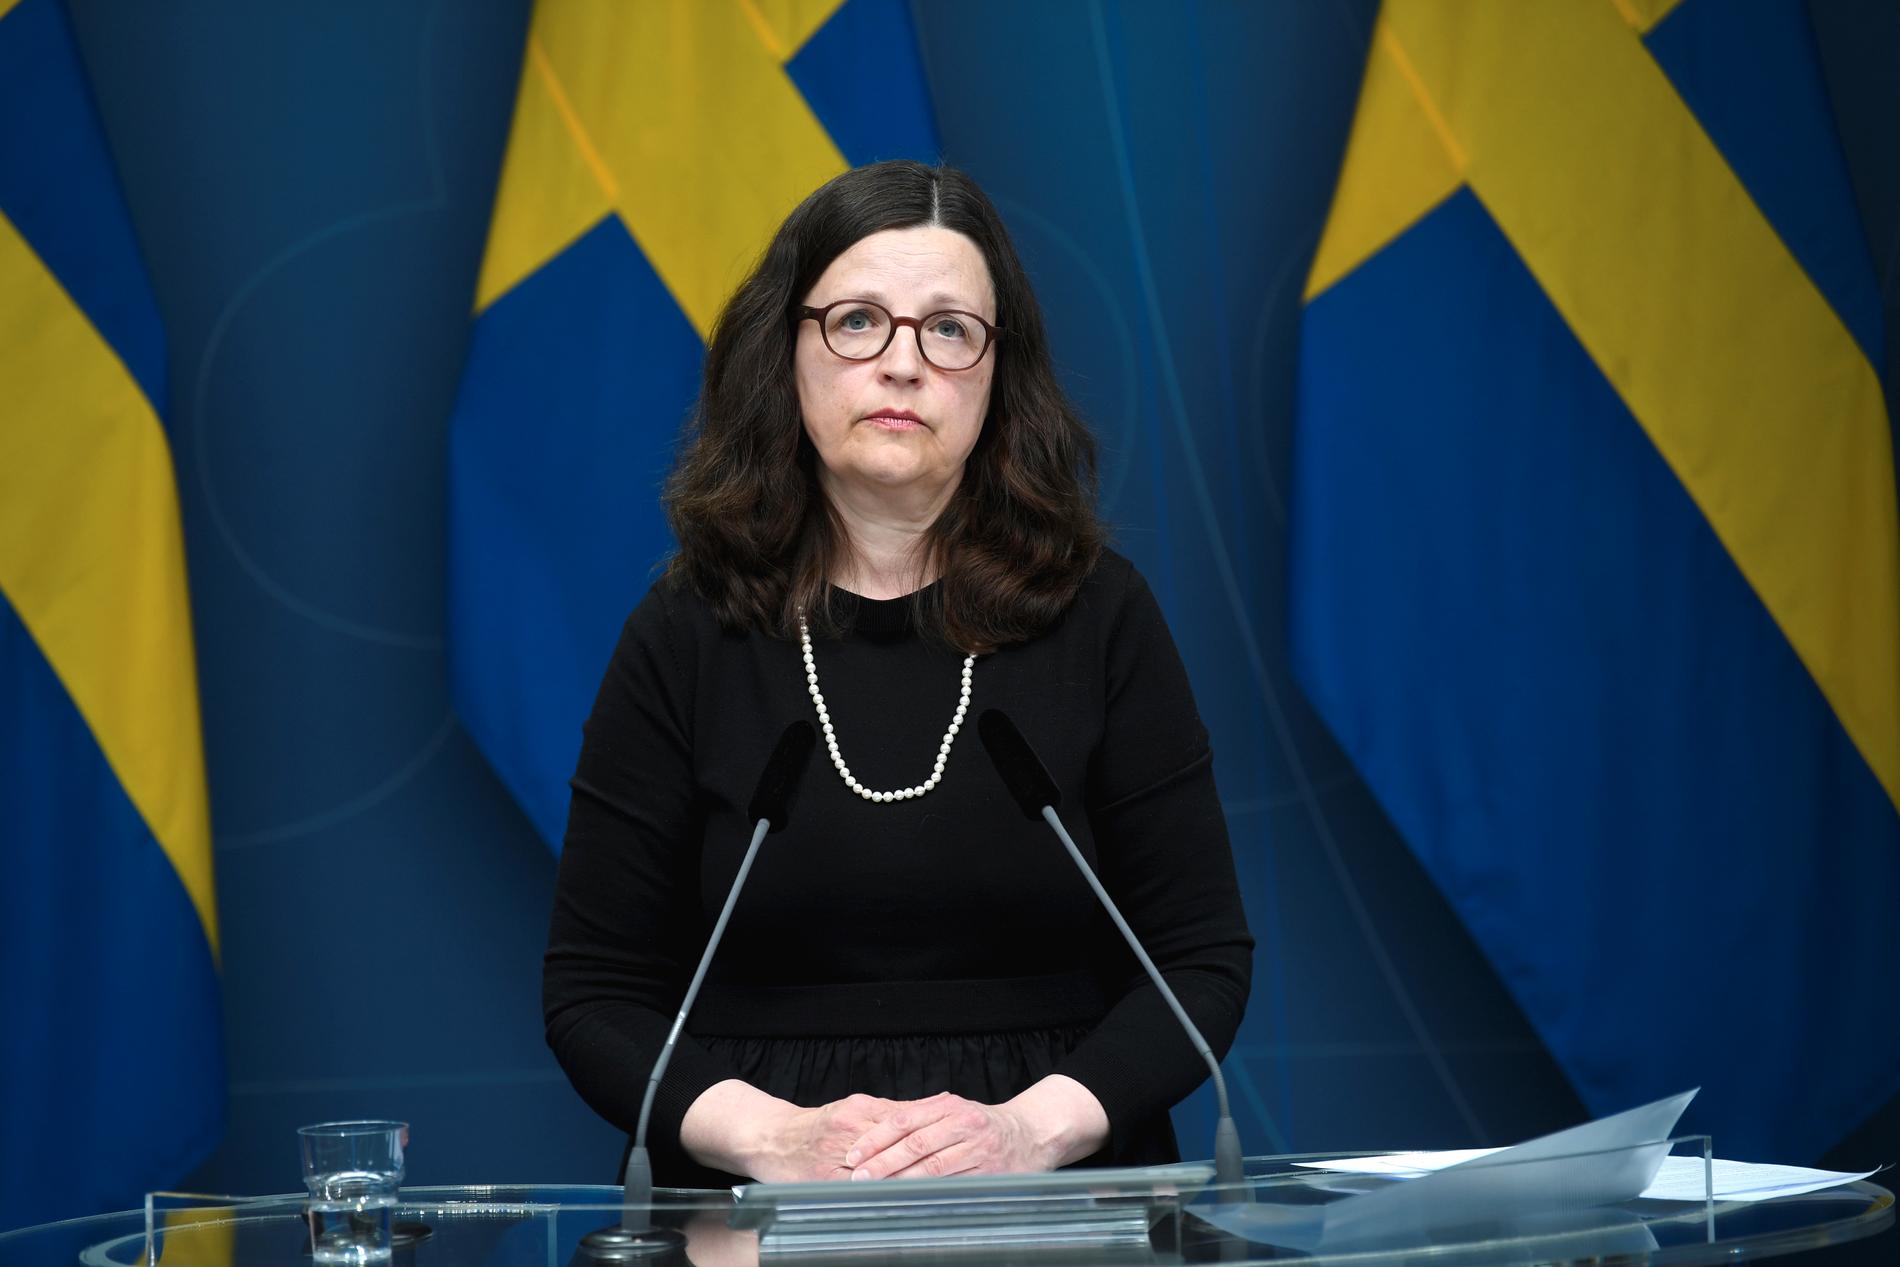 Utbildningsminister Anna Ekström (S) är kallad till utbildningsutskottets möte i dag, för att svara på frågor om hanteringen av Pisaundersökningen. Bilden är från den pressträff ministern höll efter det att Riksrevisionens kritiska rapport publicerats.